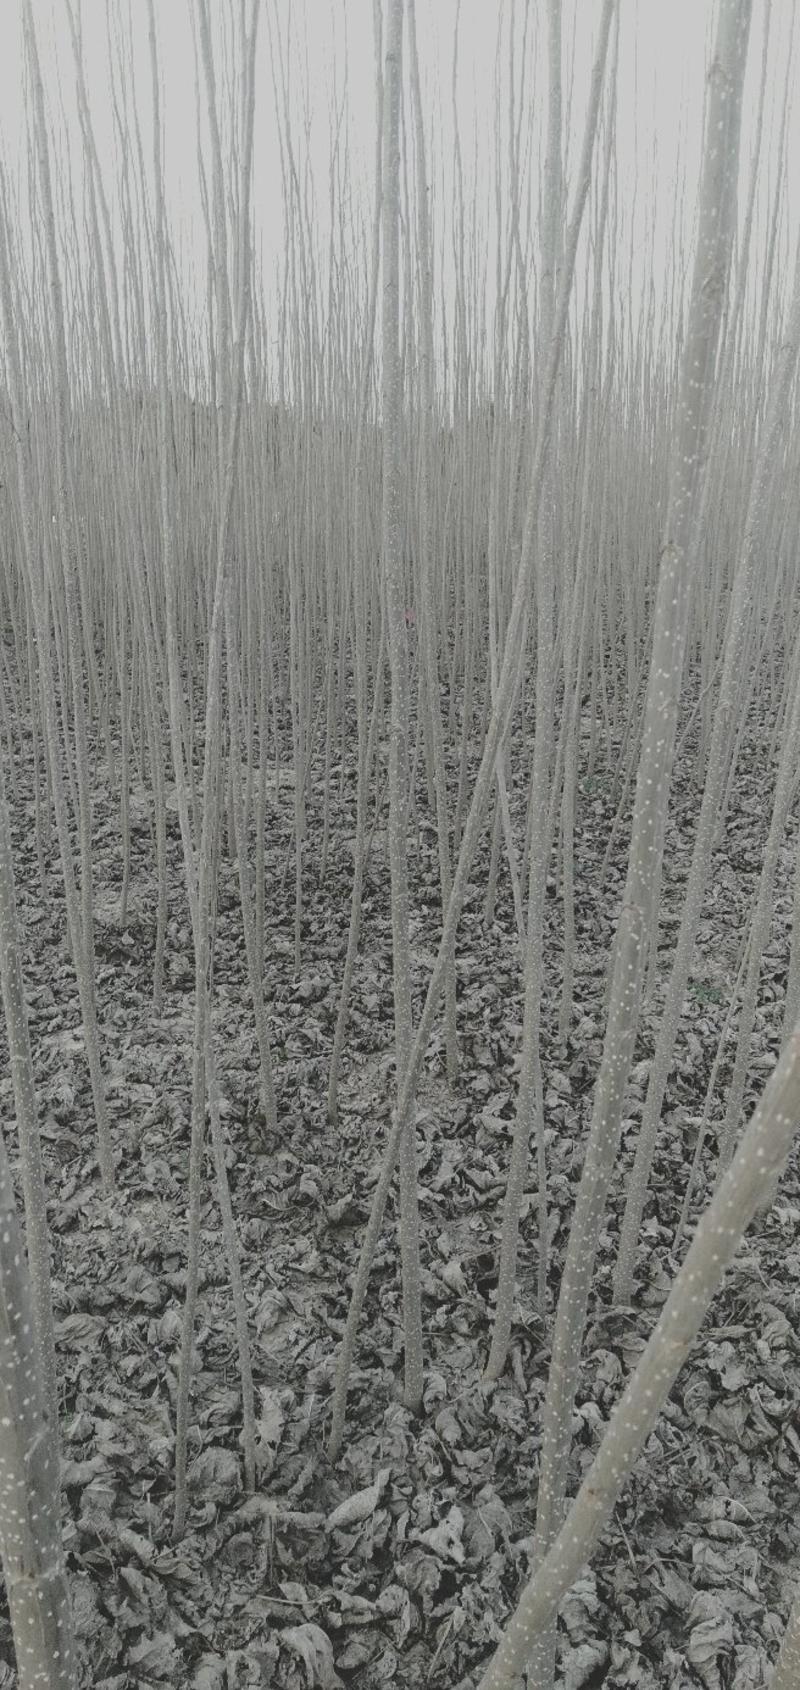 春节正常发货基地大量批发杨树苗1米到五米规格齐全